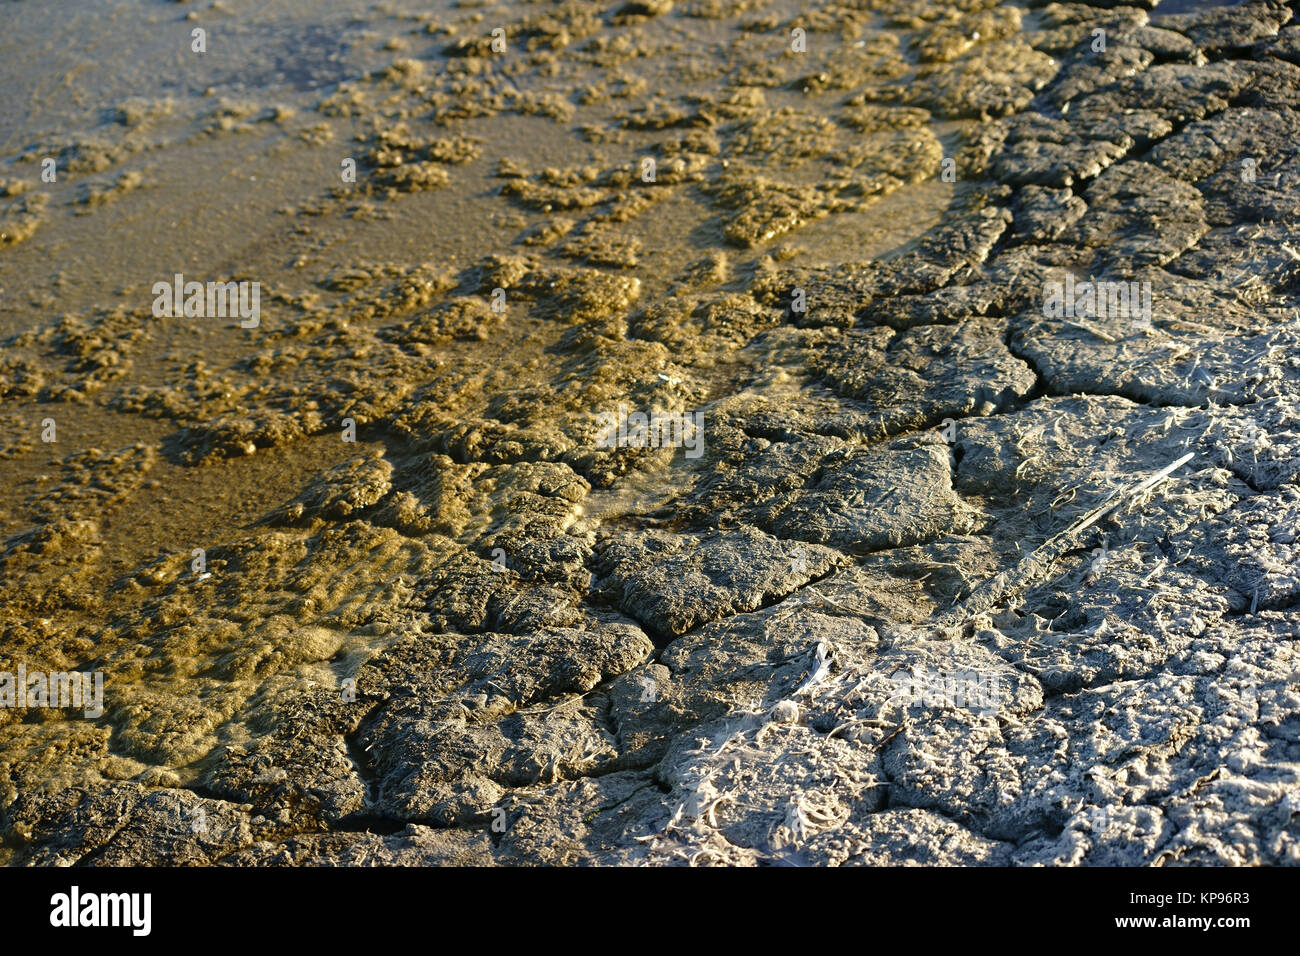 Die Nahaufnahme von und mit und Chemikalien brüchiger durchsetzter Kot Erde suis Salton Sea dans l'Frankreich und von Umweltverschmutzung Überdüngung. Banque D'Images